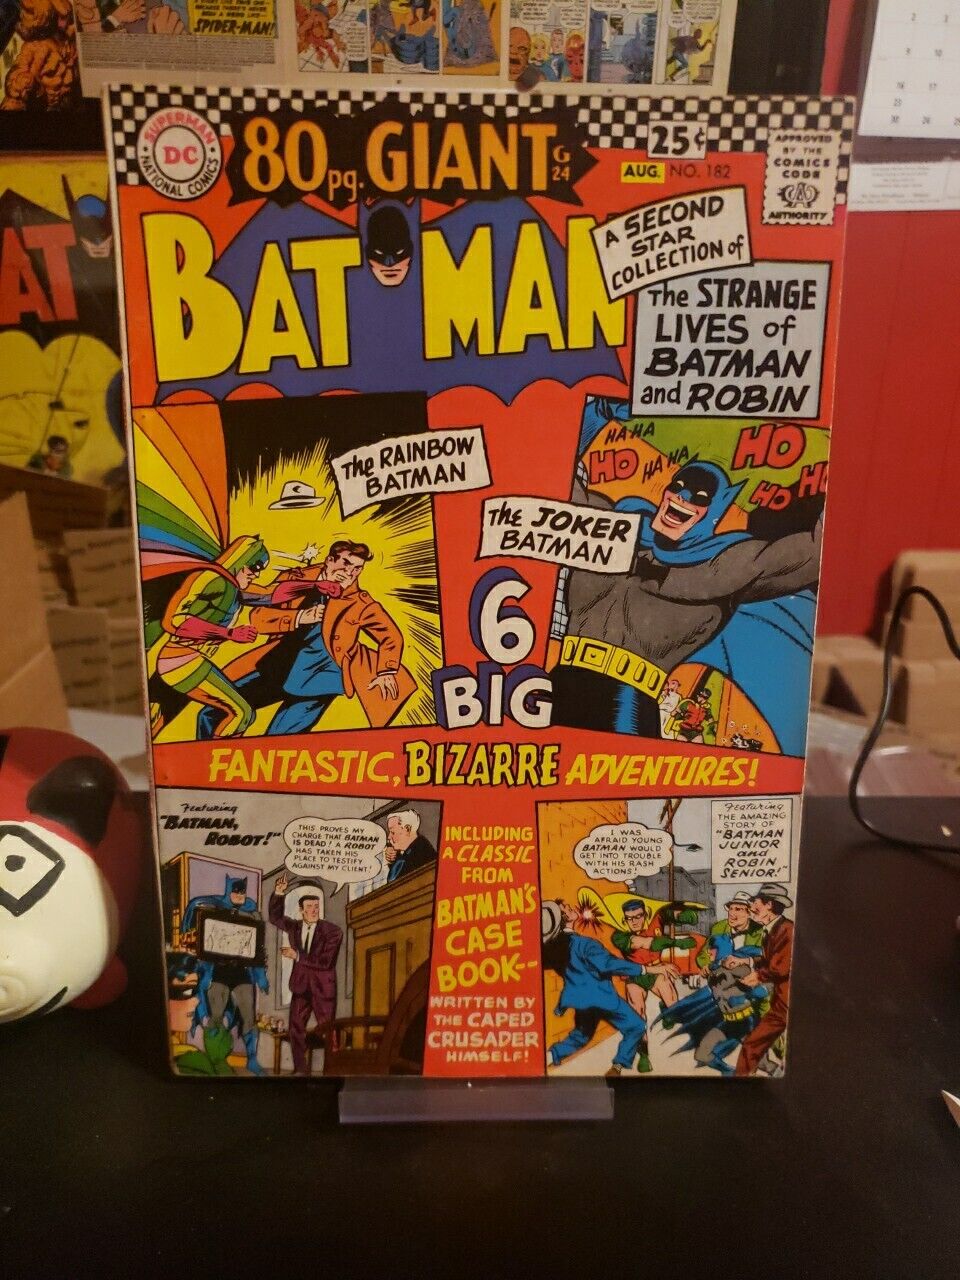 BATMAN #182 80 page GIANT 6 BIG Fantastic, Bizarre Adventures